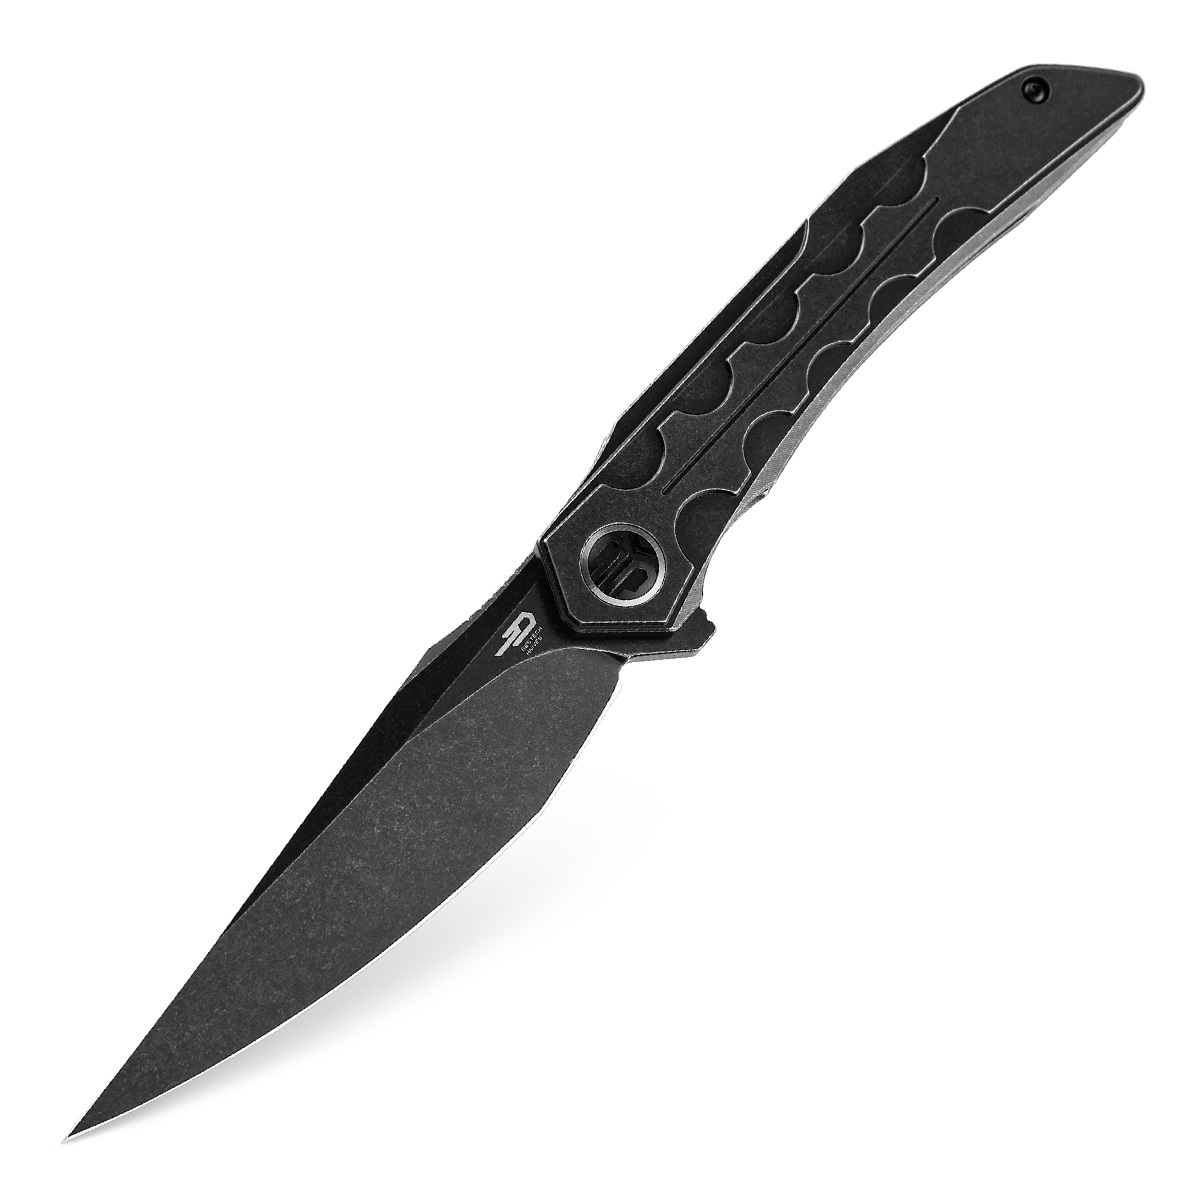 Складной нож Bestech Samari, сталь M390, рукоять титан, черный складной нож bestech falko сталь 154cm рукоять g10 carbon fiber